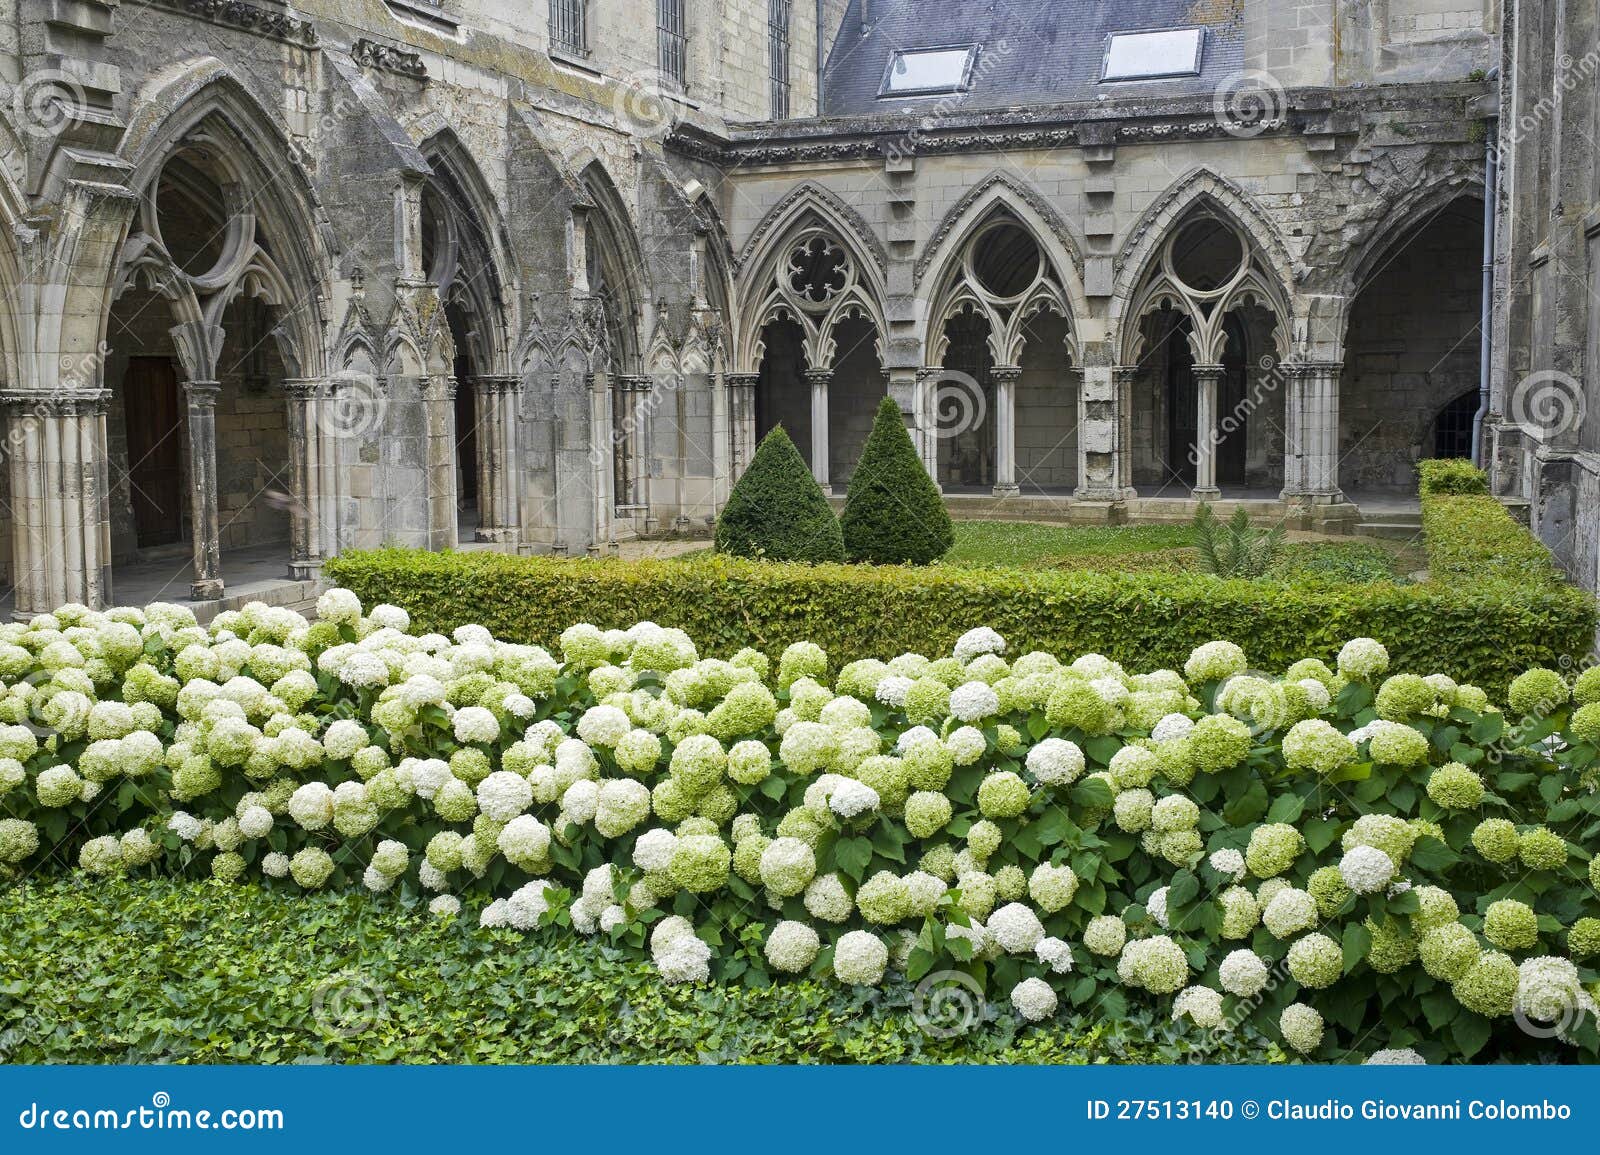 Convento dell'abbazia in Soissons. Soissons (l'Aisne, Picardie, Francia) - convento dell'abbazia antica in stile gotico, piante e fiori (hydrangeas bianchi)